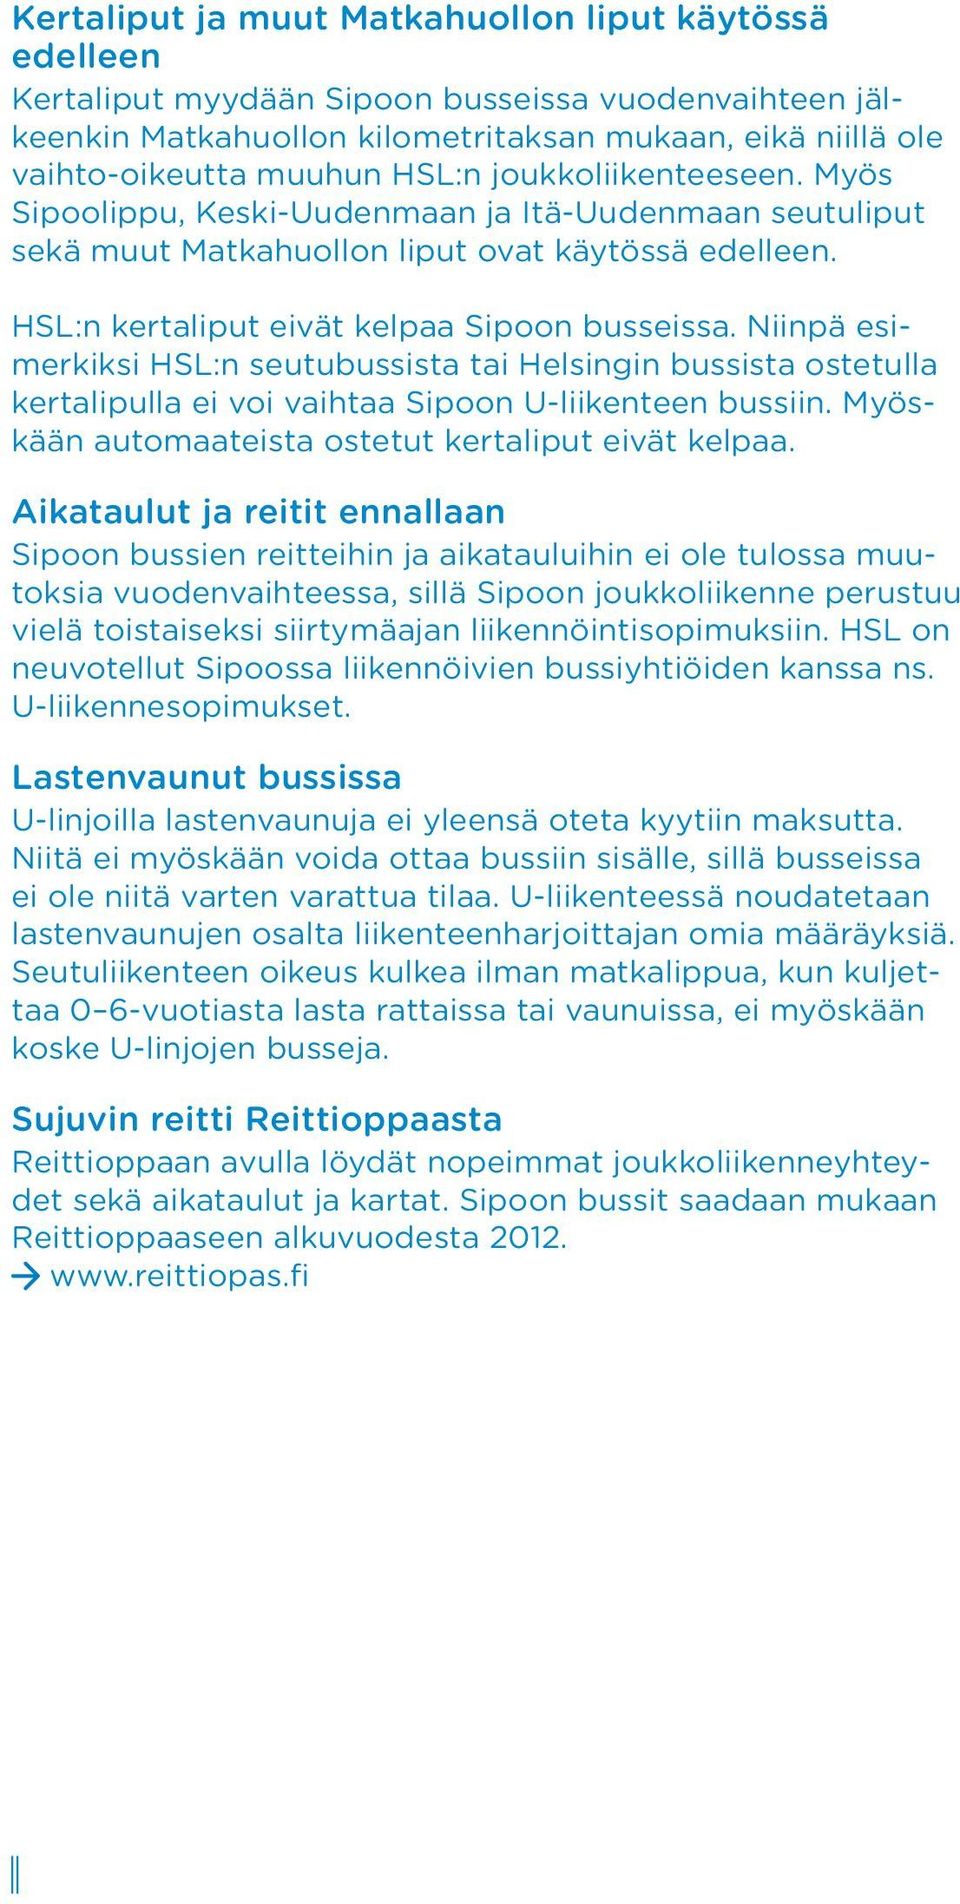 Niinpä esimerkiksi HSL:n seutubussista tai Helsingin bussista ostetulla kertalipulla ei voi vaihtaa Sipoon U-liikenteen bussiin. Myöskään automaateista ostetut kertaliput eivät kelpaa.